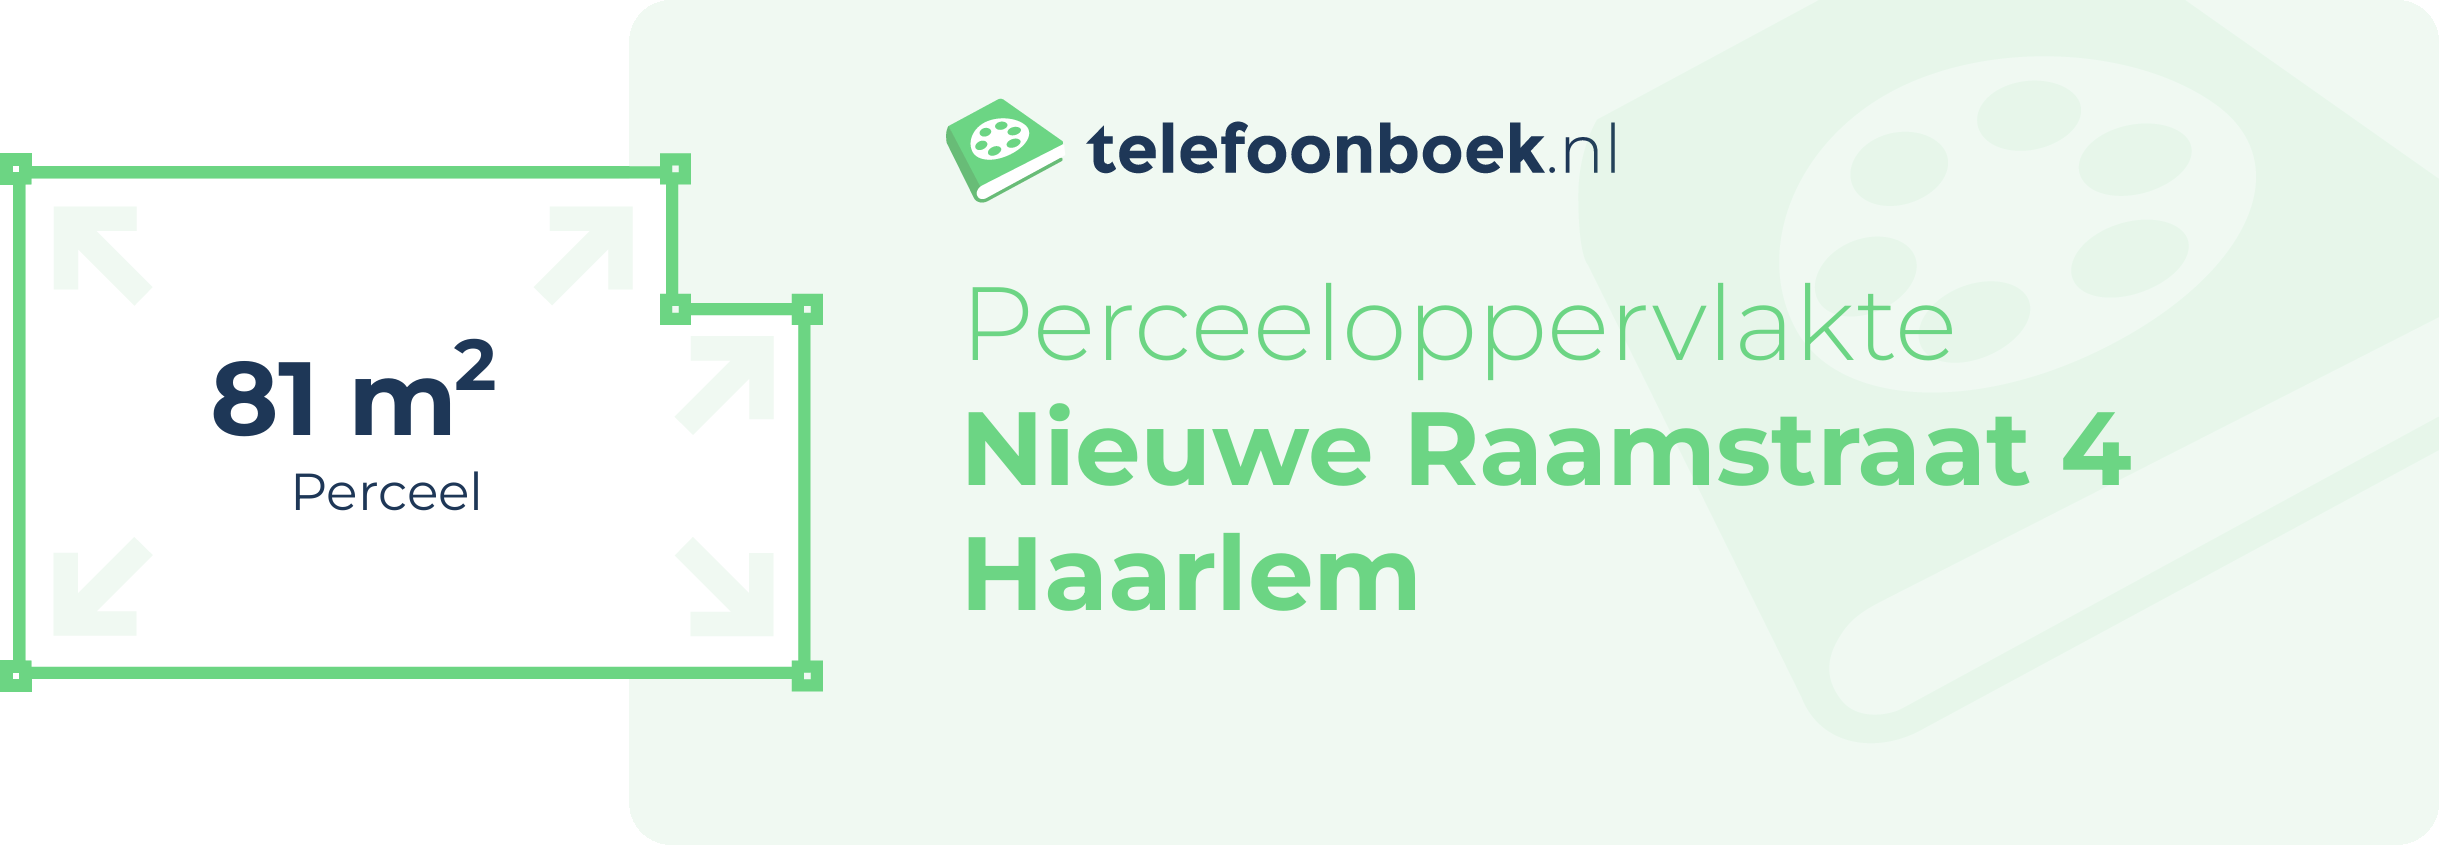 Perceeloppervlakte Nieuwe Raamstraat 4 Haarlem